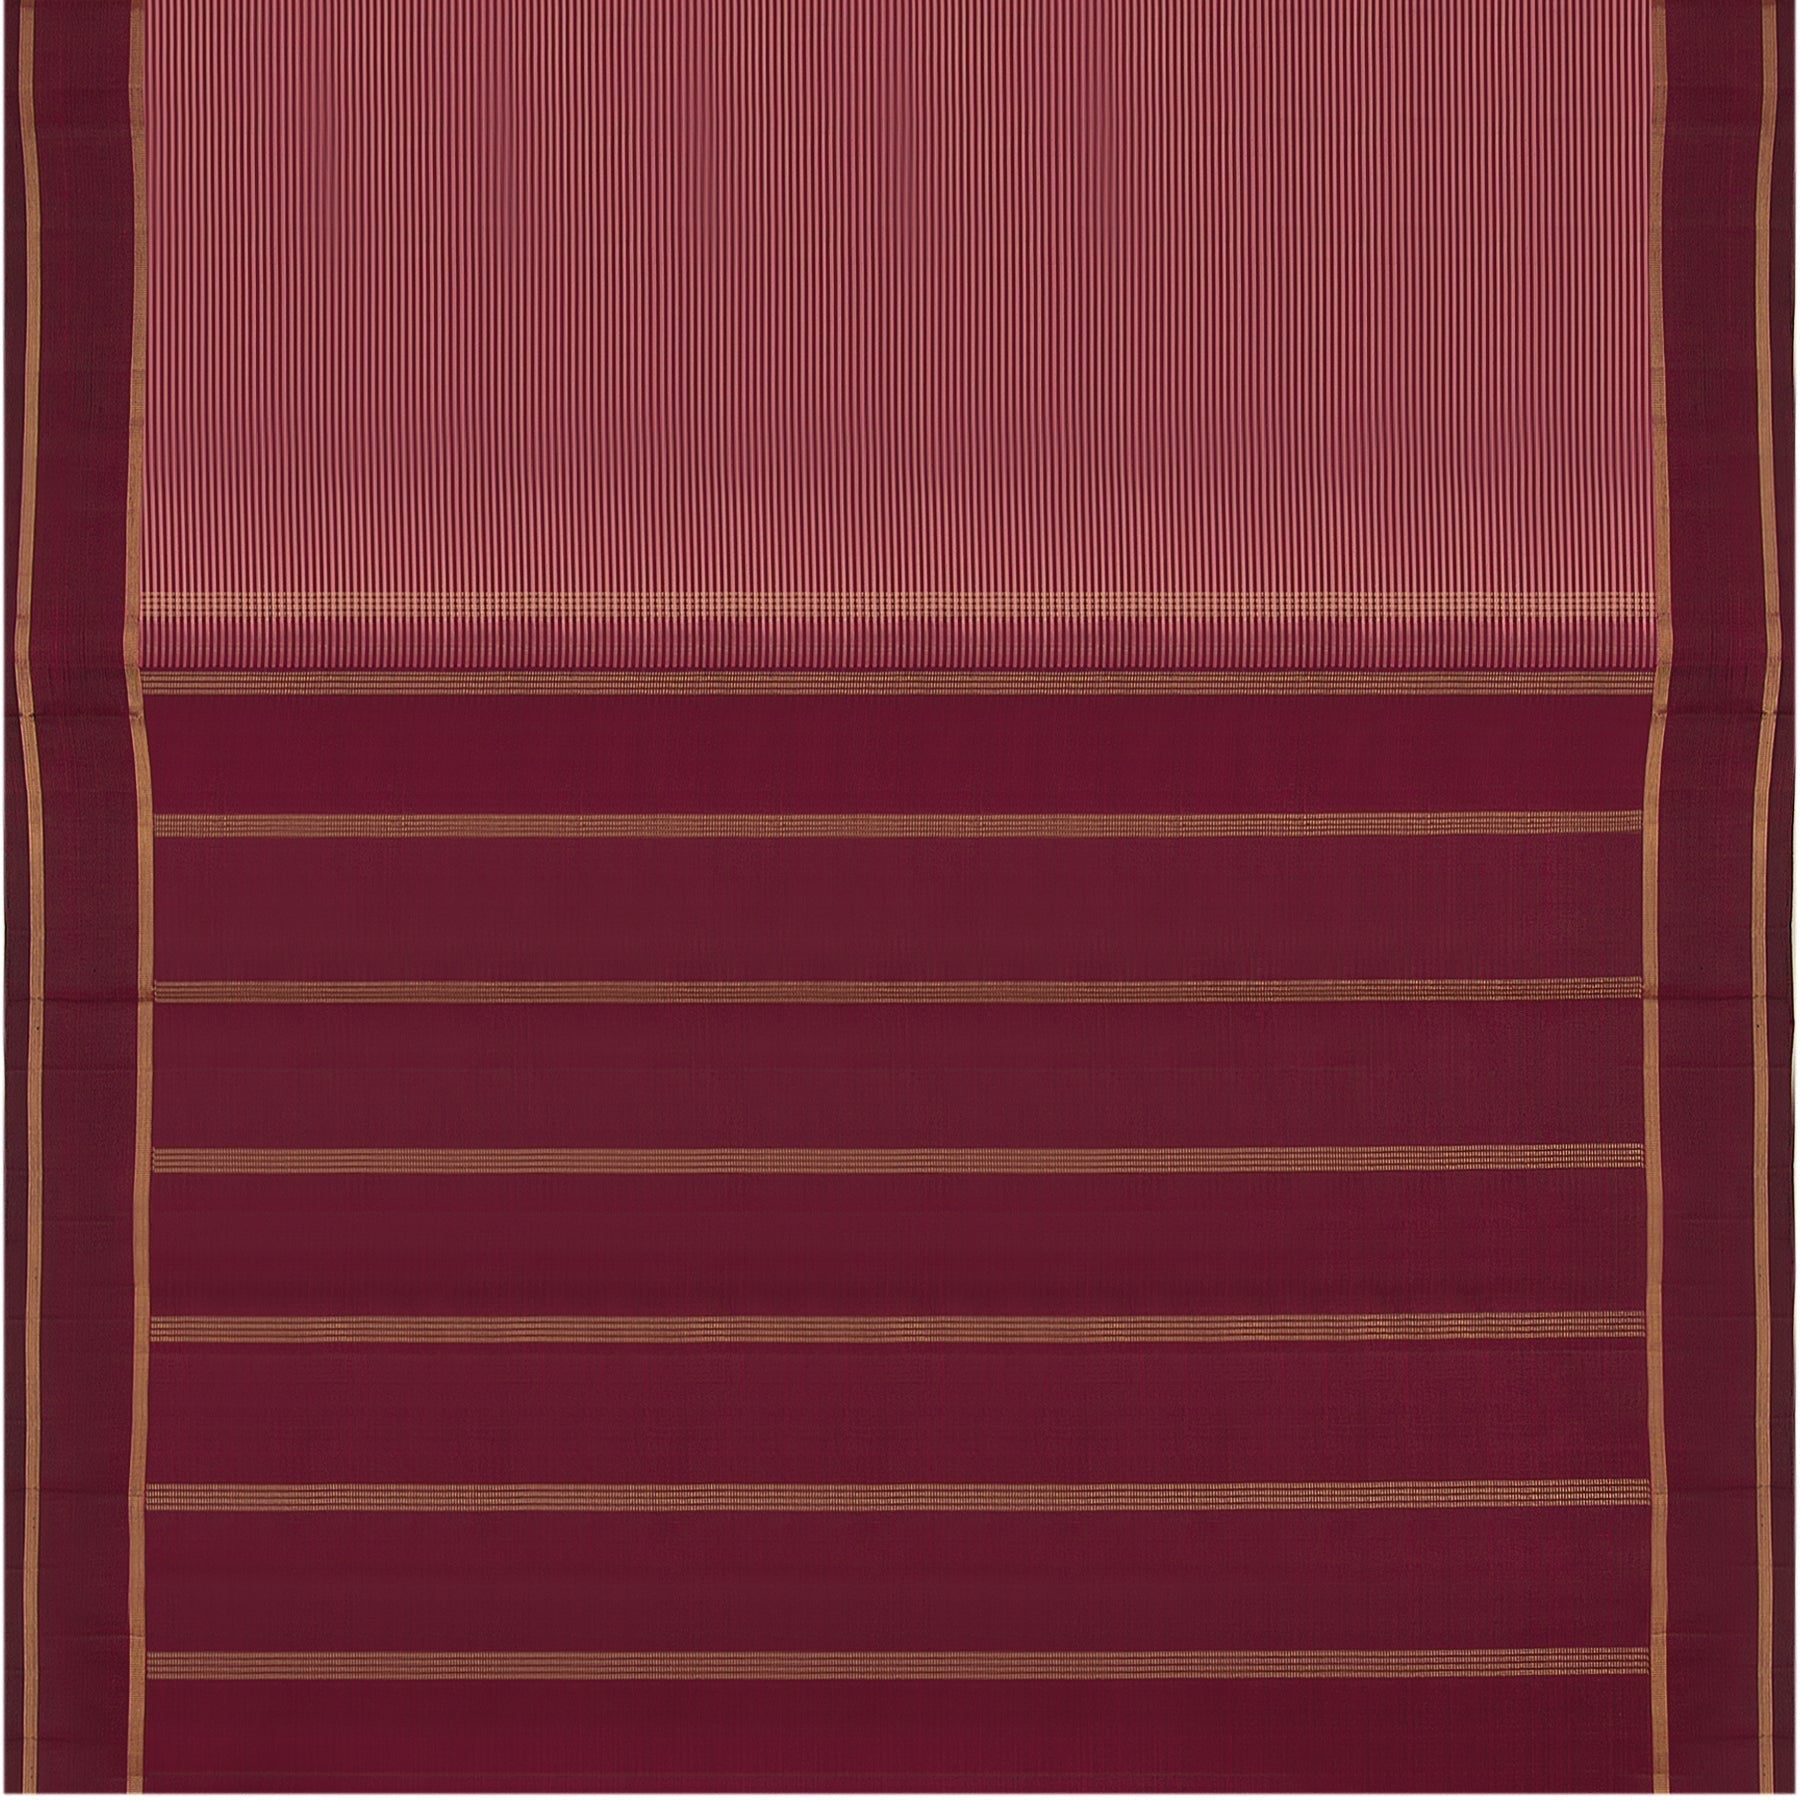 Kanakavalli Kanjivaram Silk Sari 22-601-HS001-00444 - Full View